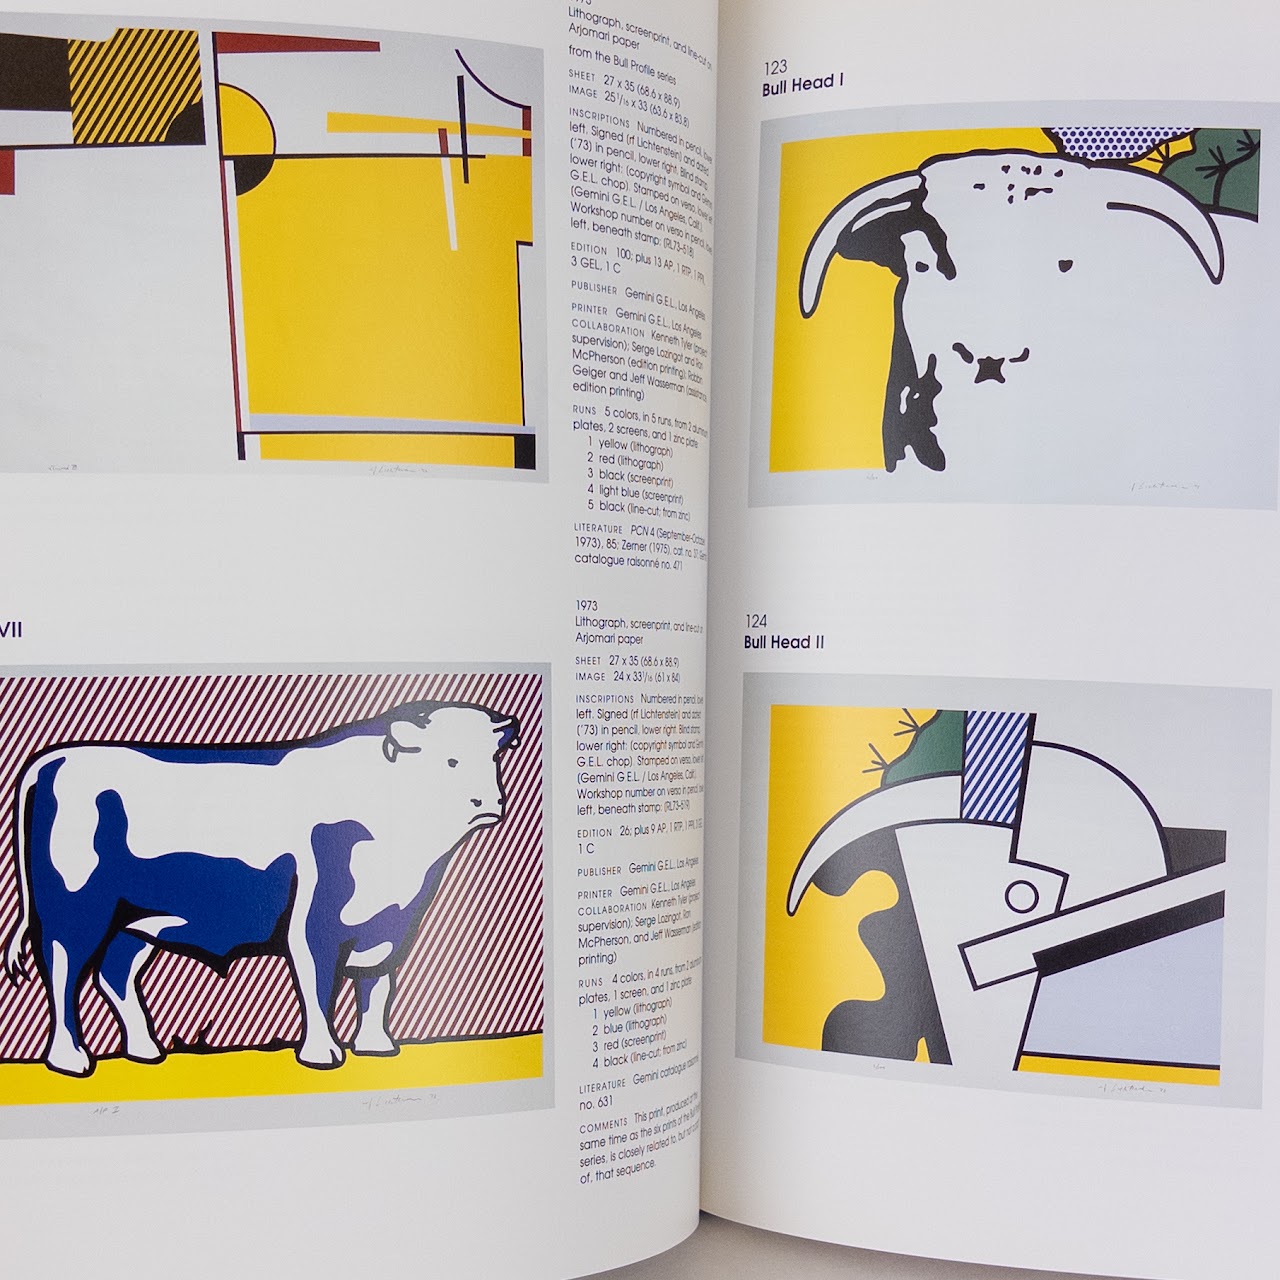 Mary Lee Corlett, 'The Prints Of Roy Lichtenstein' Catalogue Raisonne